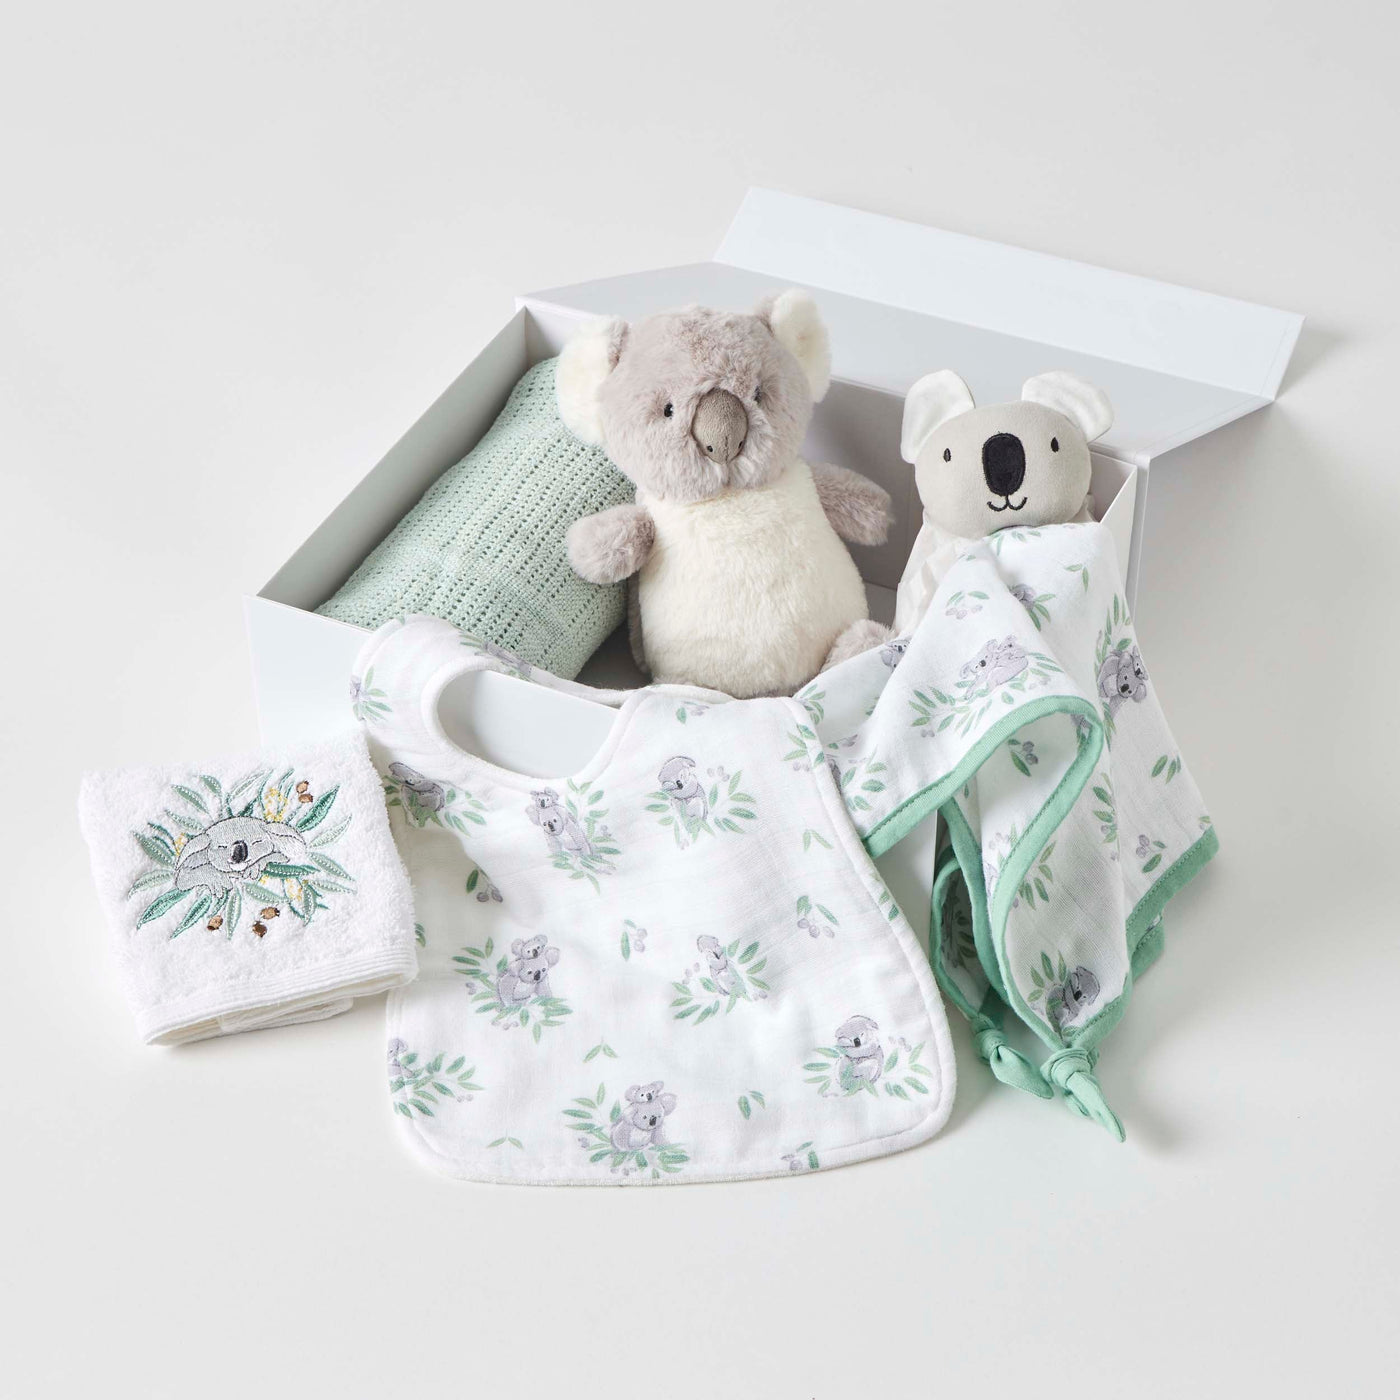 Koala Cuddles Hamper Gift Set-Lima & Co-Lima & Co